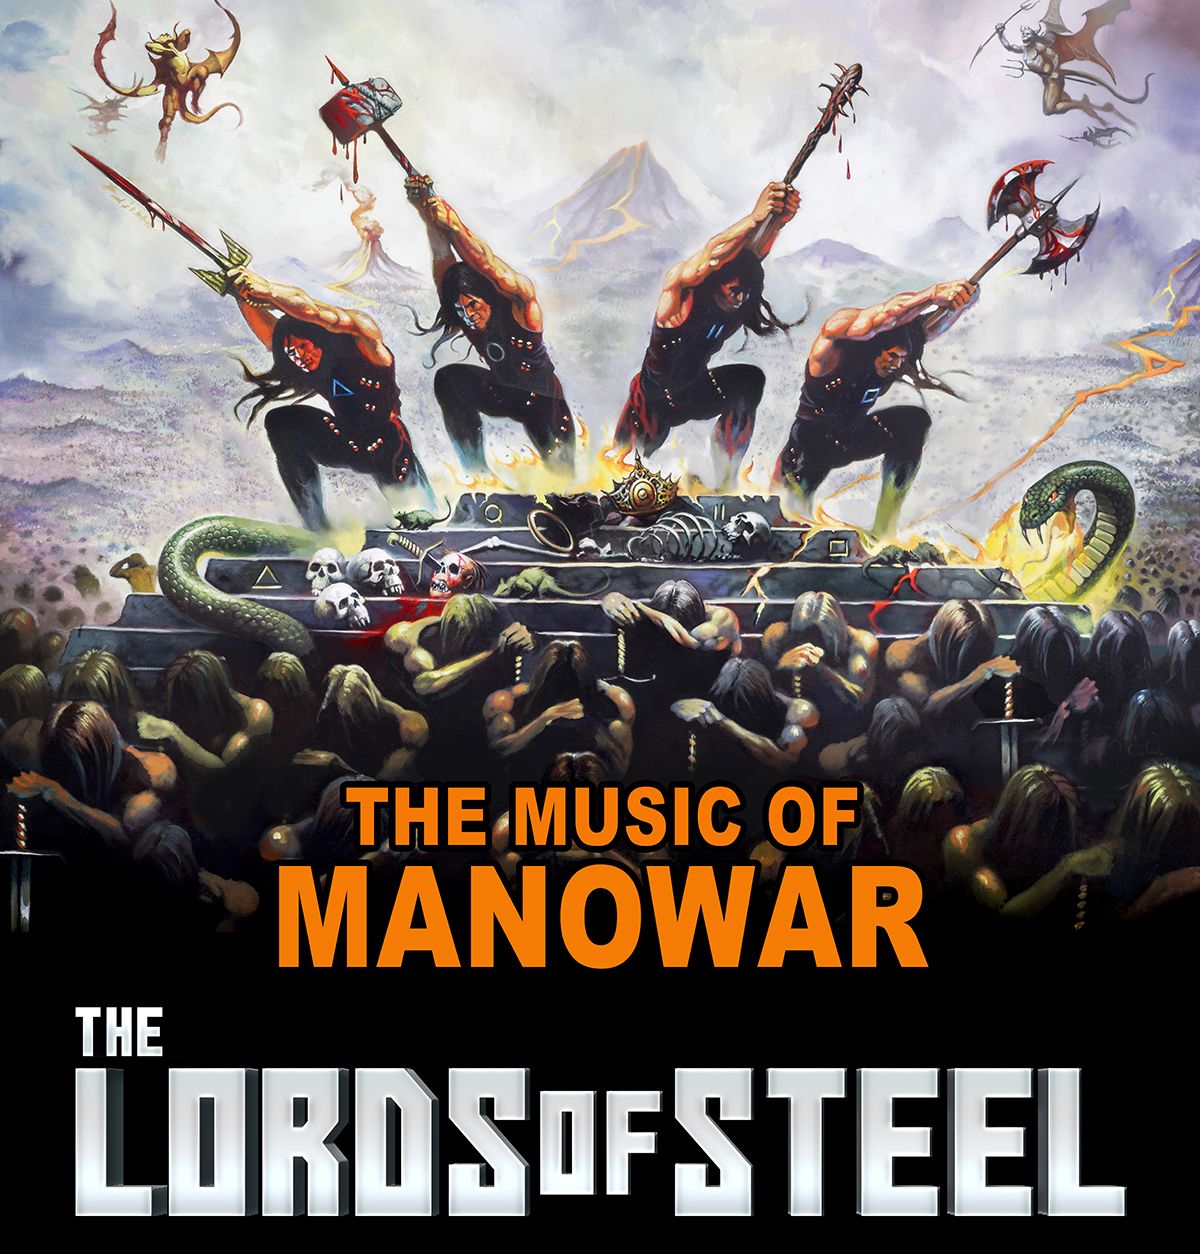 Überraschungskonzert als "Cover-Band" The Lords Of Steel in Münster gespielt